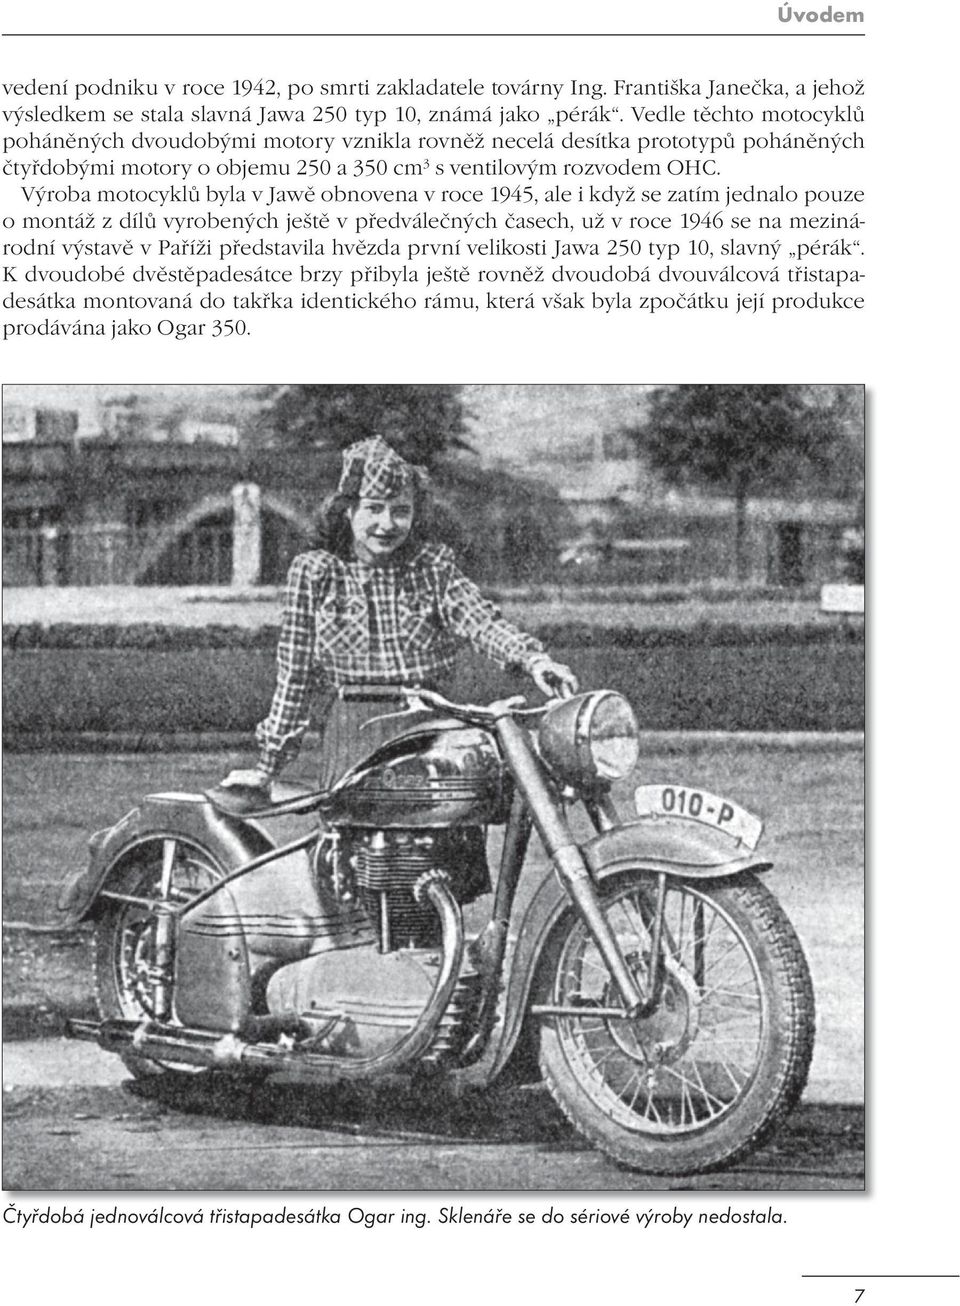 Výroba motocyklů byla v Jawě obnovena v roce 1945, ale i když se zatím jednalo pouze o montáž z dílů vyrobených ještě v předválečných časech, už v roce 1946 se na mezinárodní výstavě v Paříži